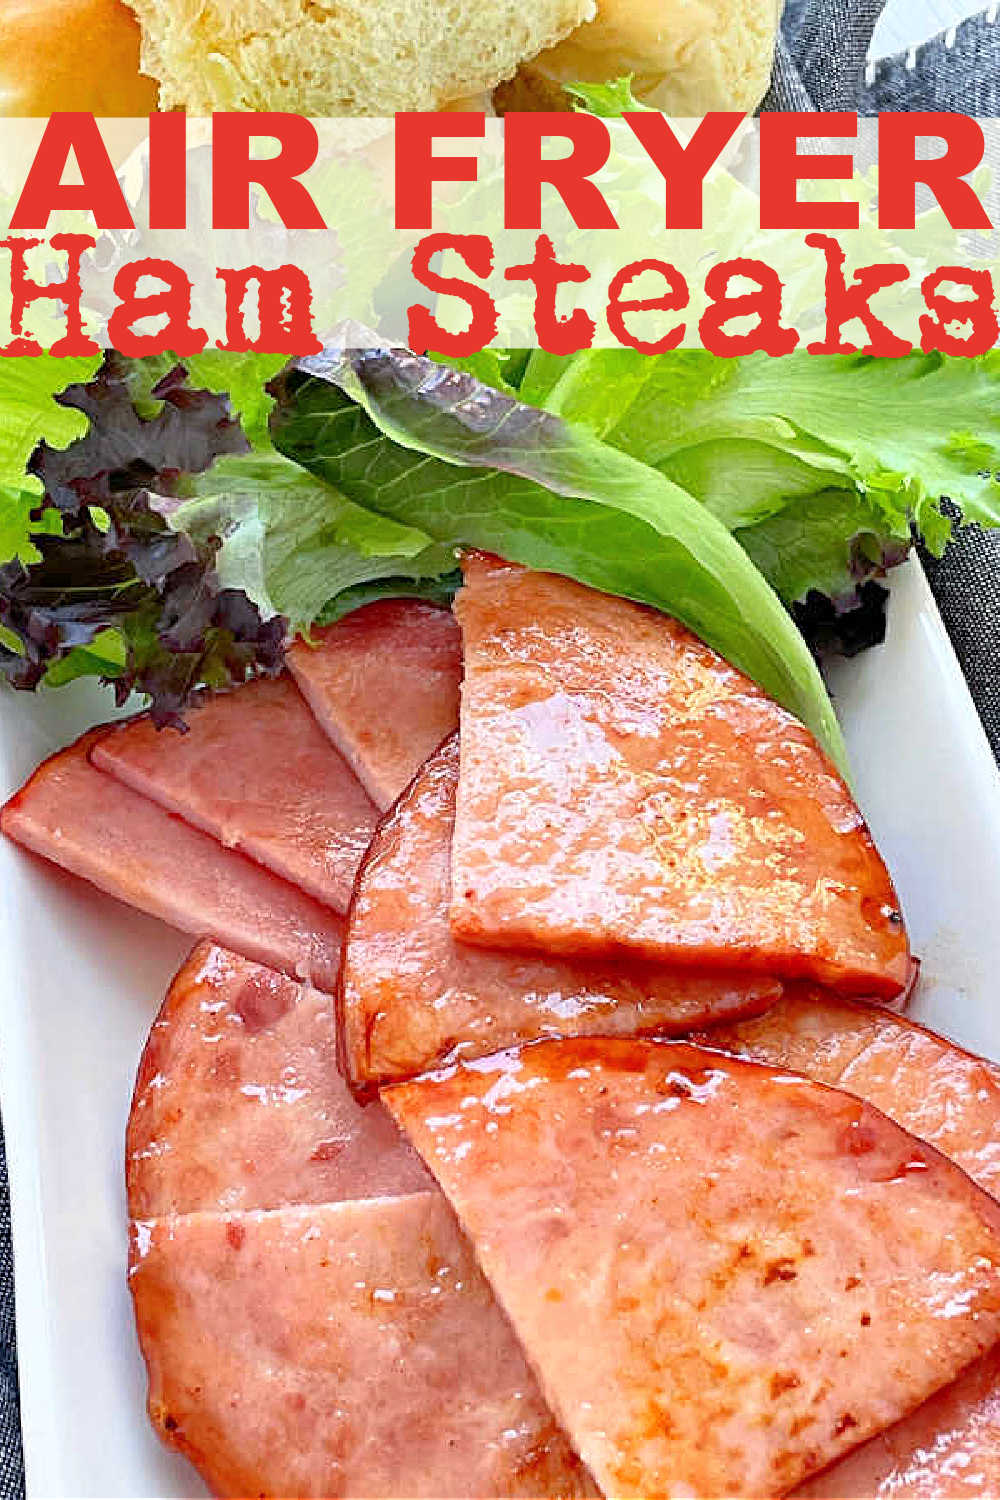 Air Fryer Ham Steaks | Foodtastic Mom #airfryerrecipes #airfryerhamsteaks #hamsteaks via @foodtasticmom